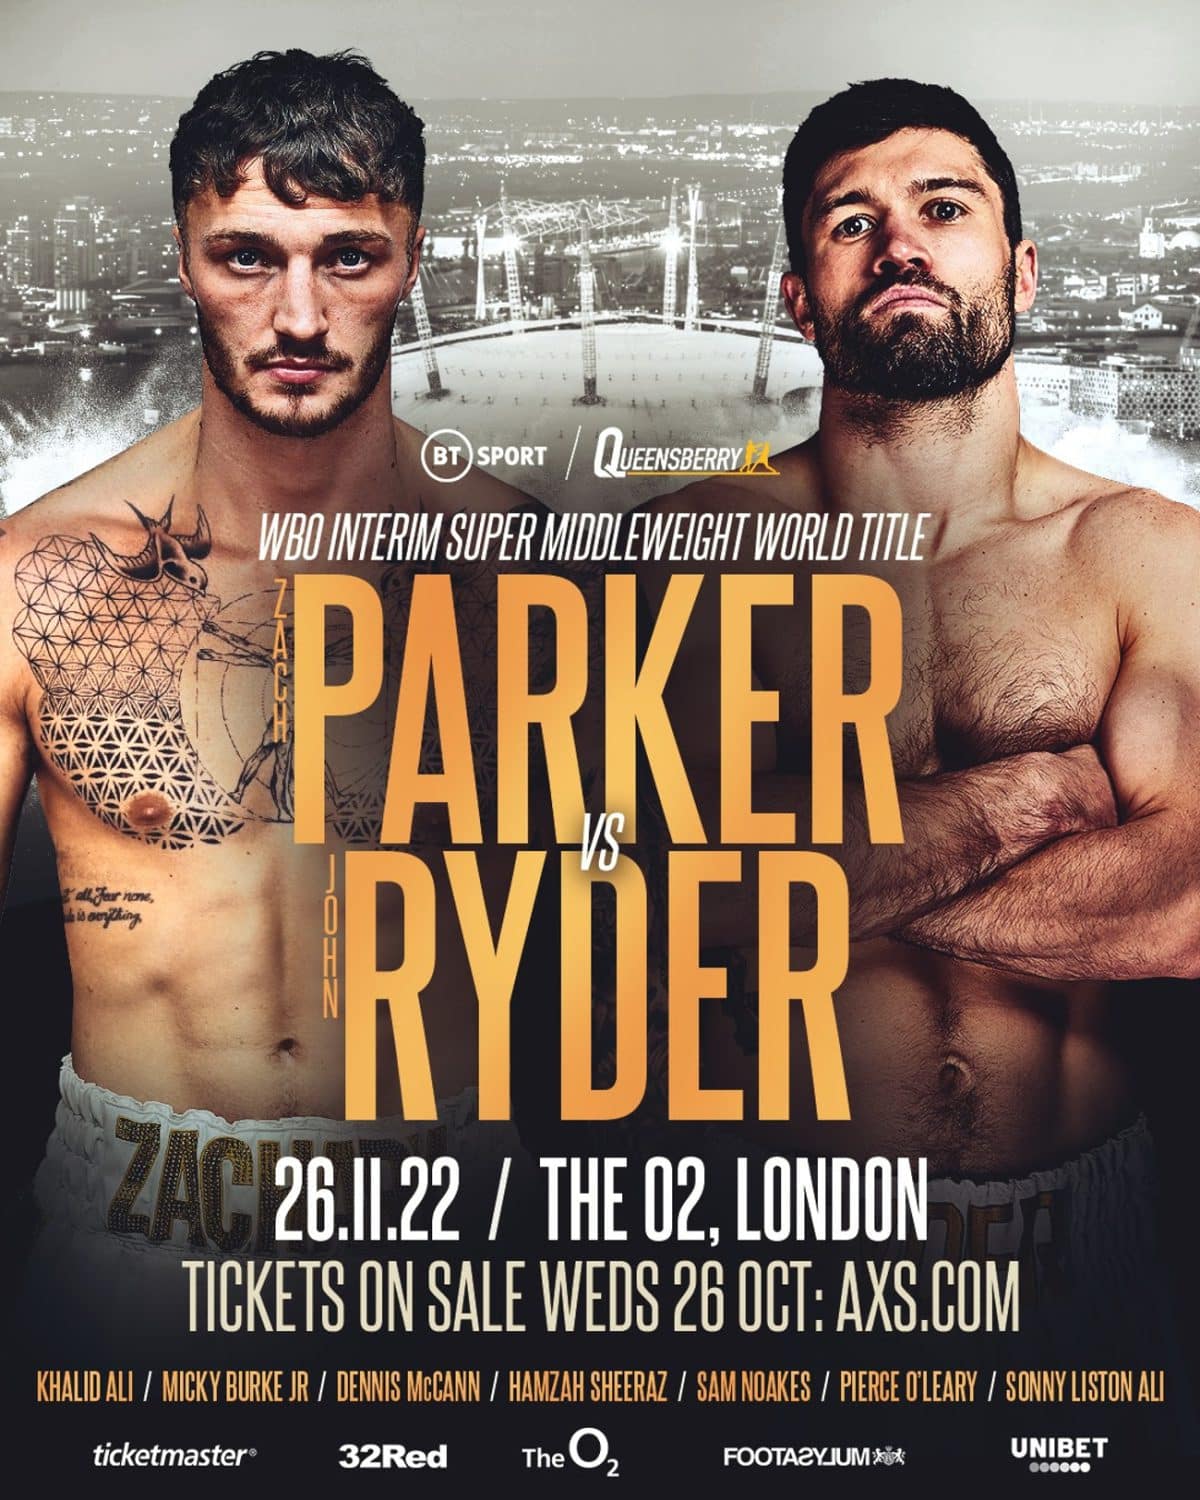 Image: Zach Parker battles John Ryder on Nov.26th at O2 Arena in London